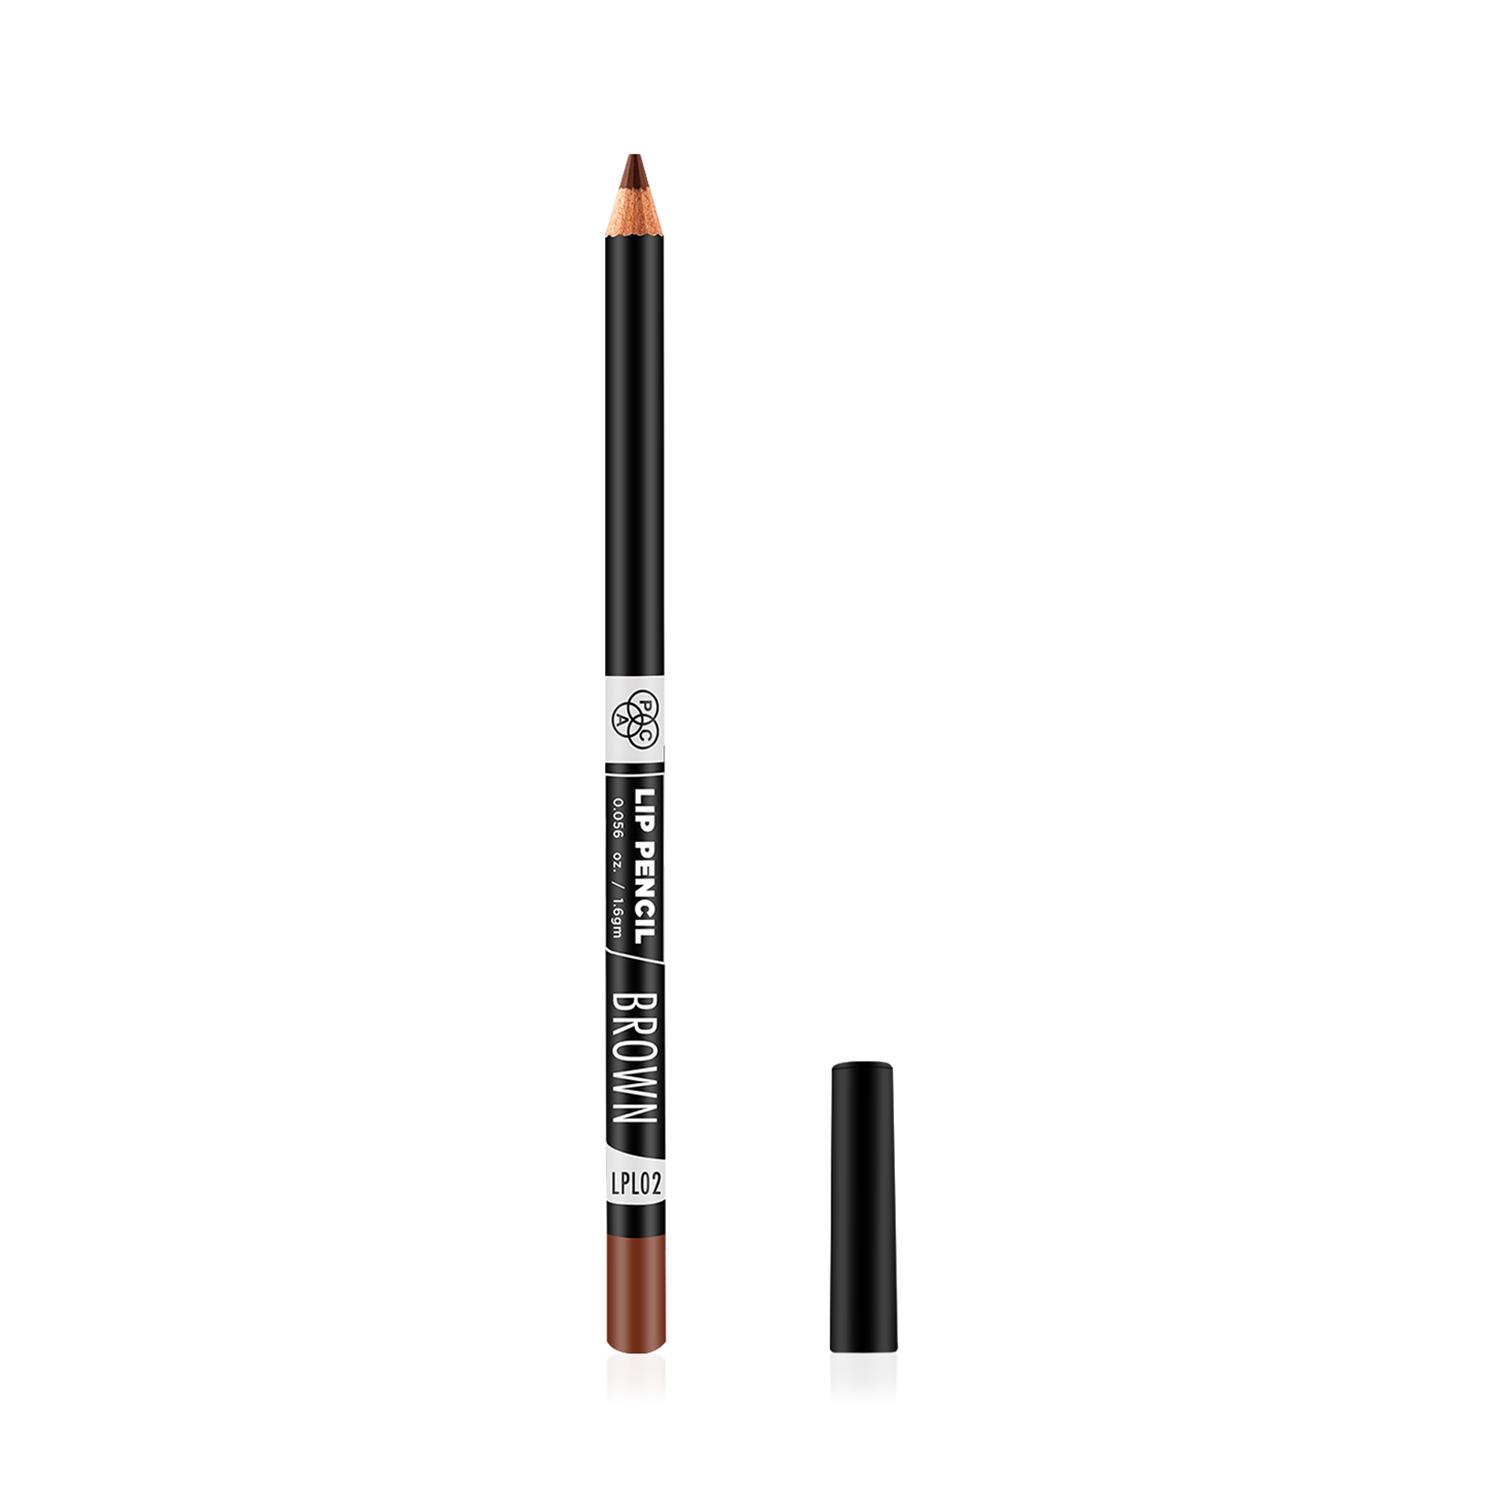 PAC | PAC Lip Pencil - 02 Brown (1.6g)